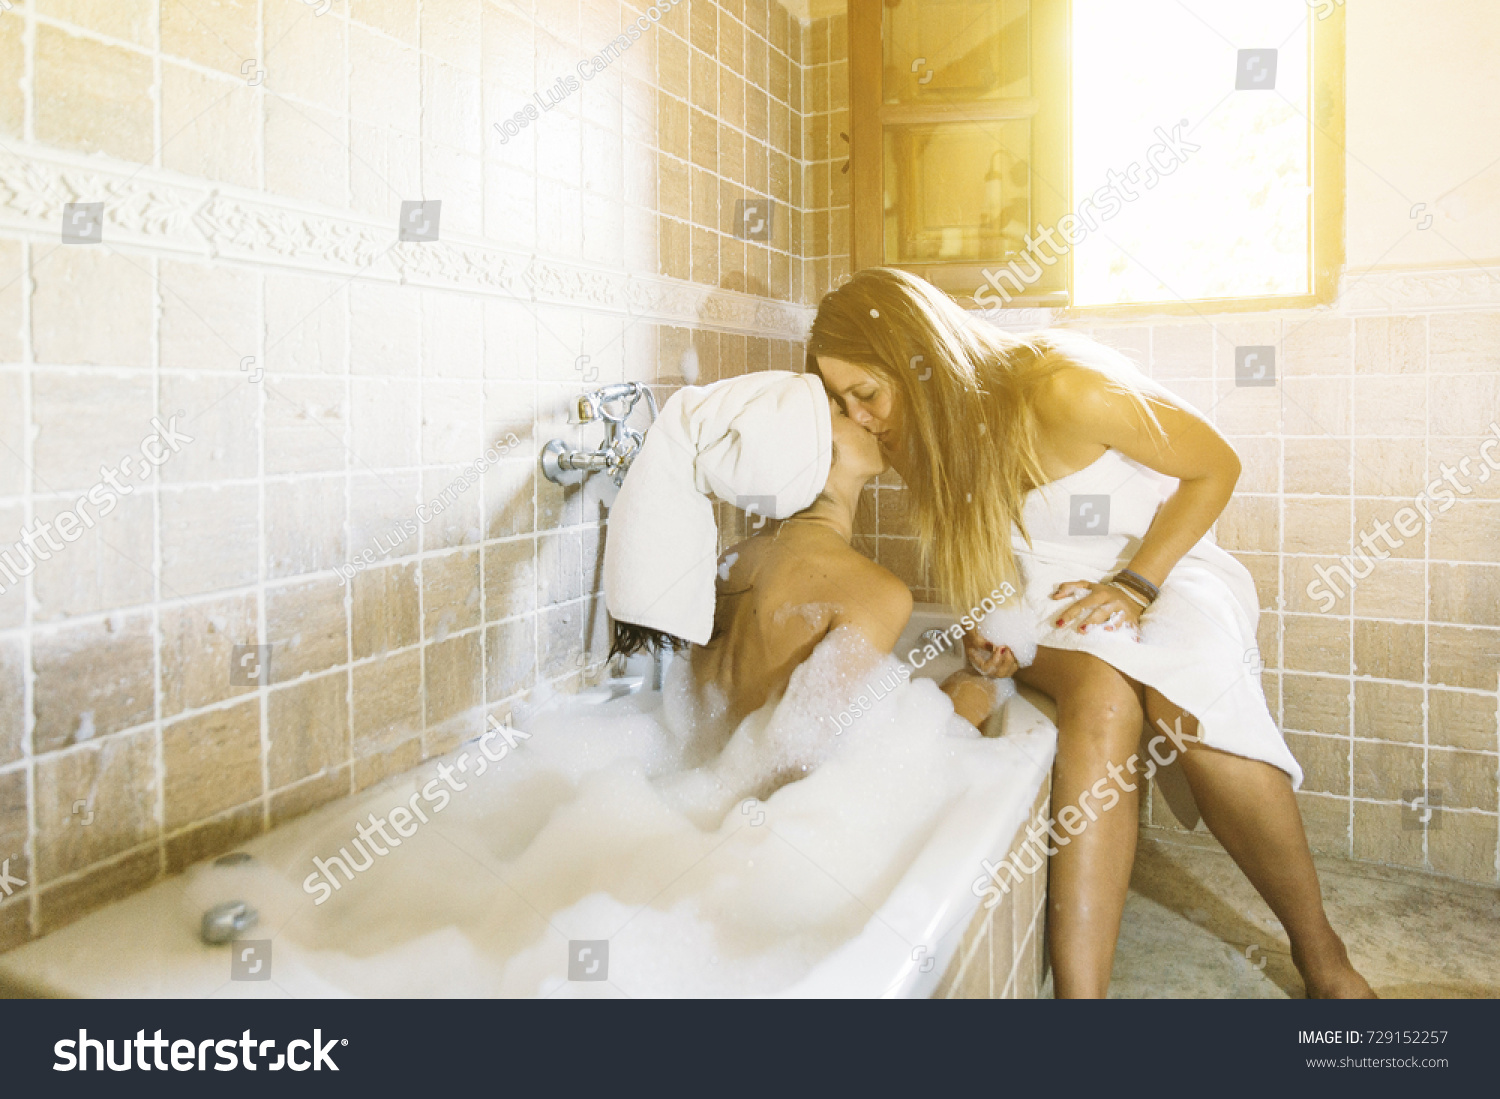 Lesbian In Bathroom